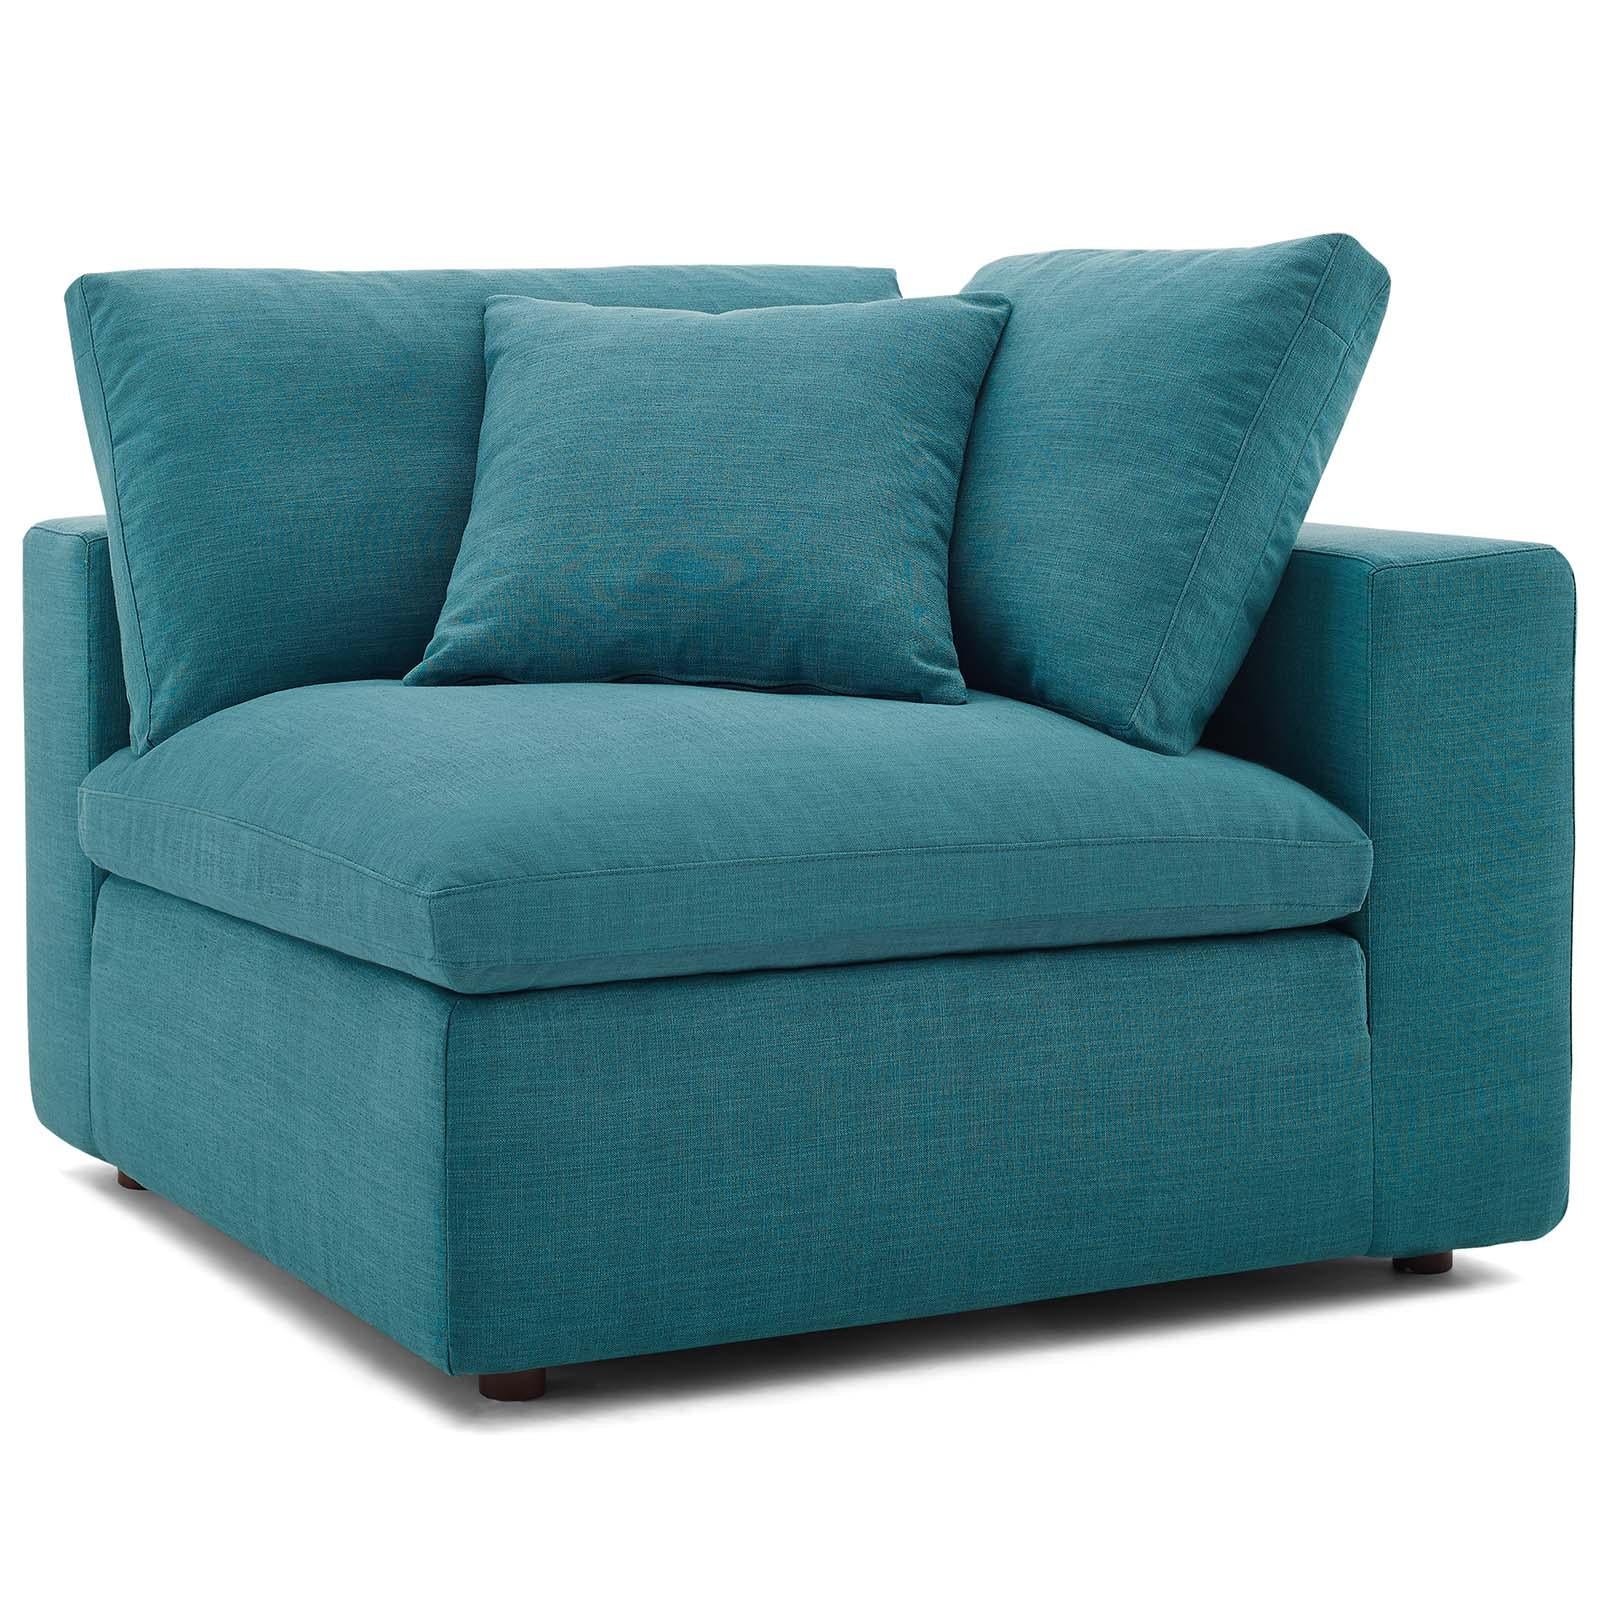 Modway Furniture Modern Commix Down Filled Overstuffed 6 Piece Sectional Sofa Set - EEI-3361